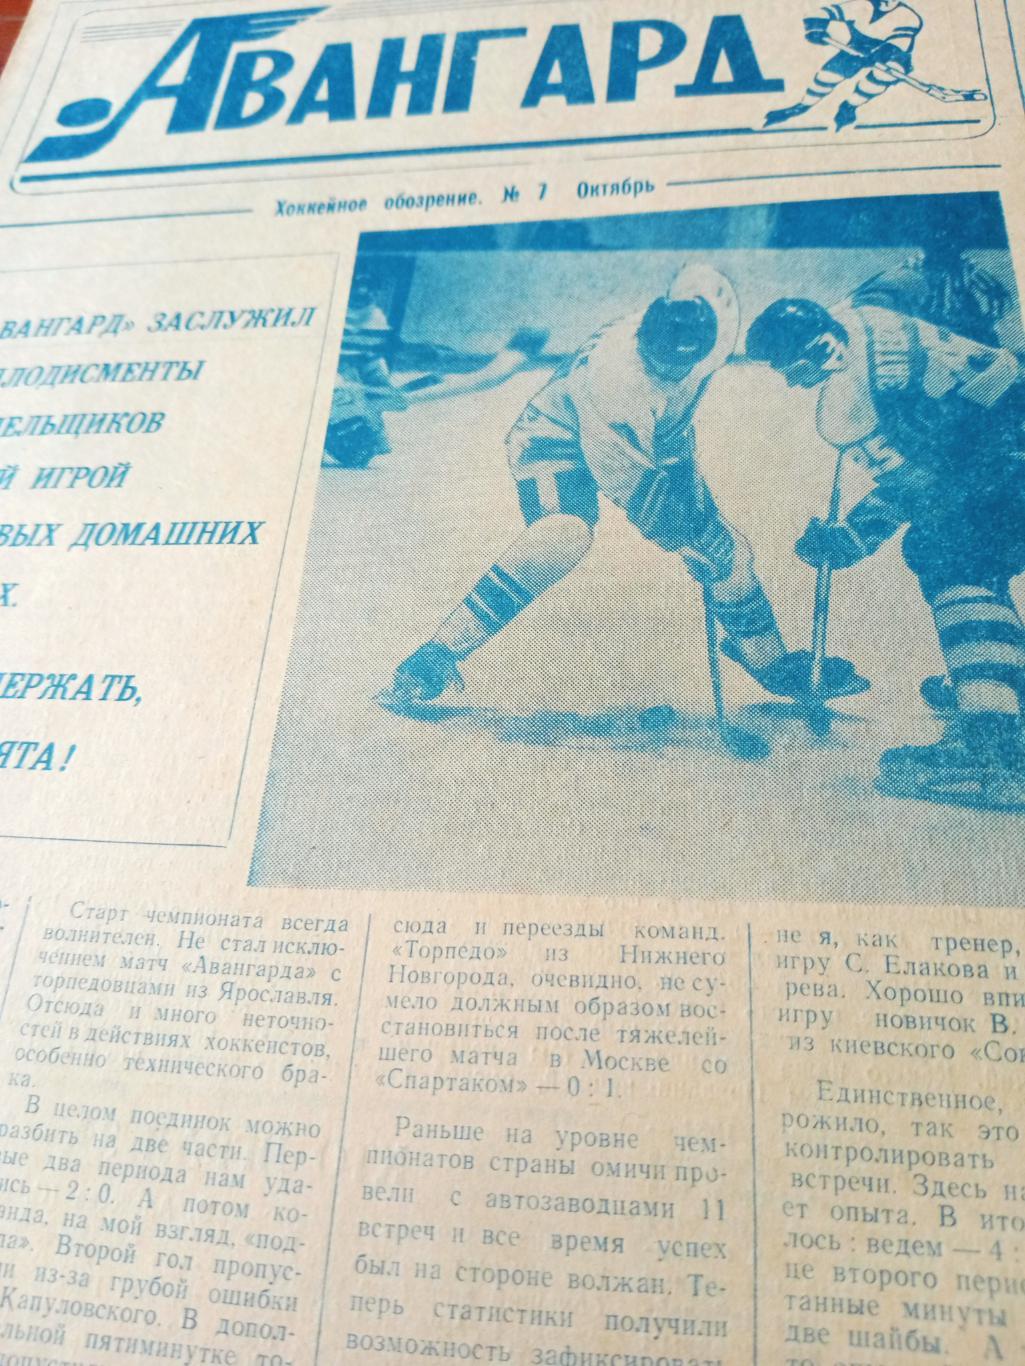 Авангард. Омск. Хоккейное обозрение. 1991 год, октябрь, №7.